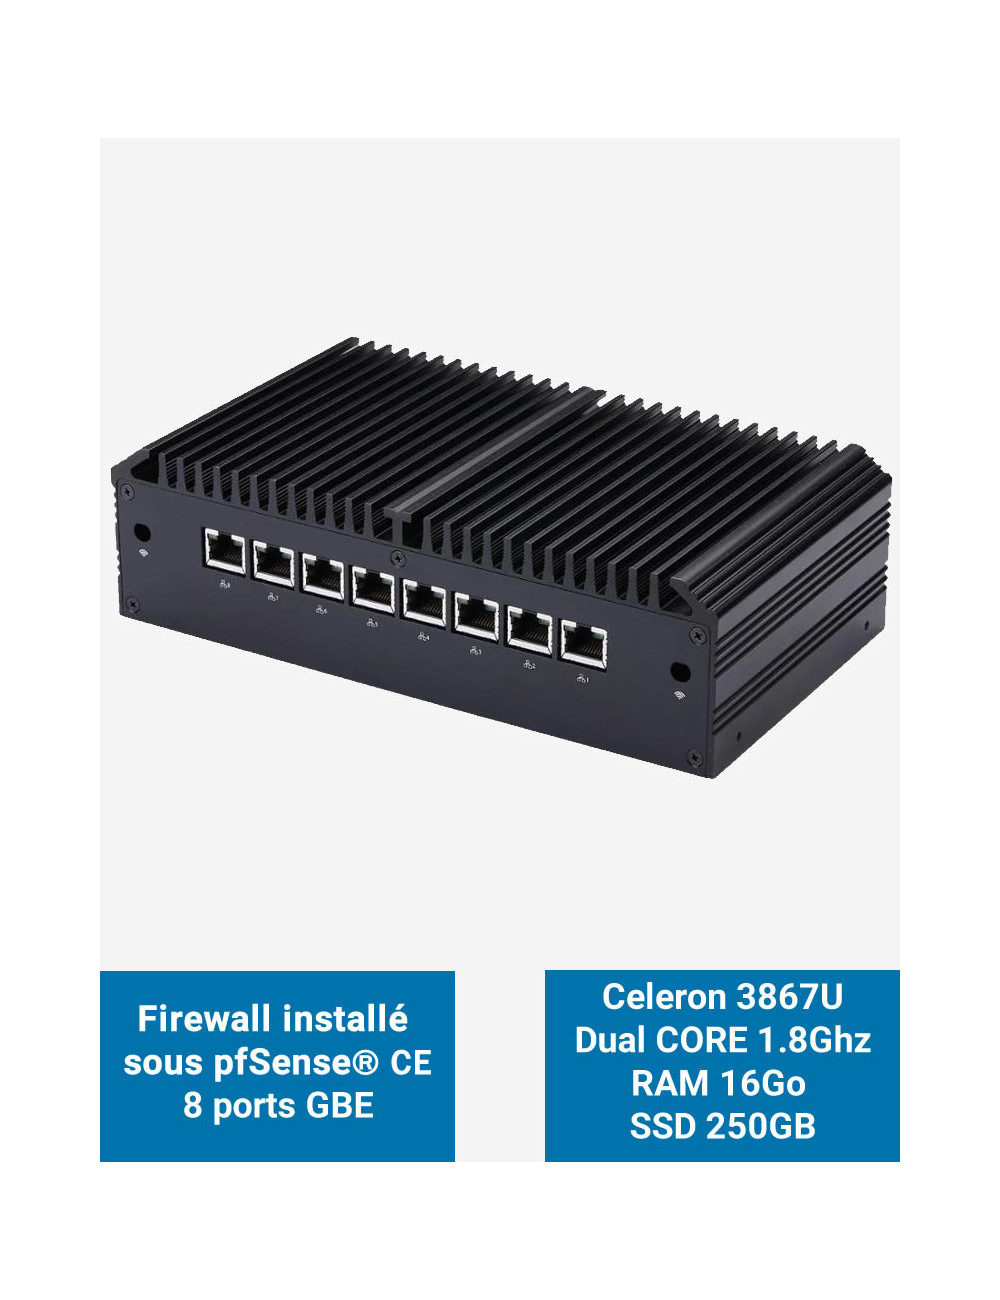 Firewall Q8x Celeron 3867U 8 ports GbE 16GB 250GB